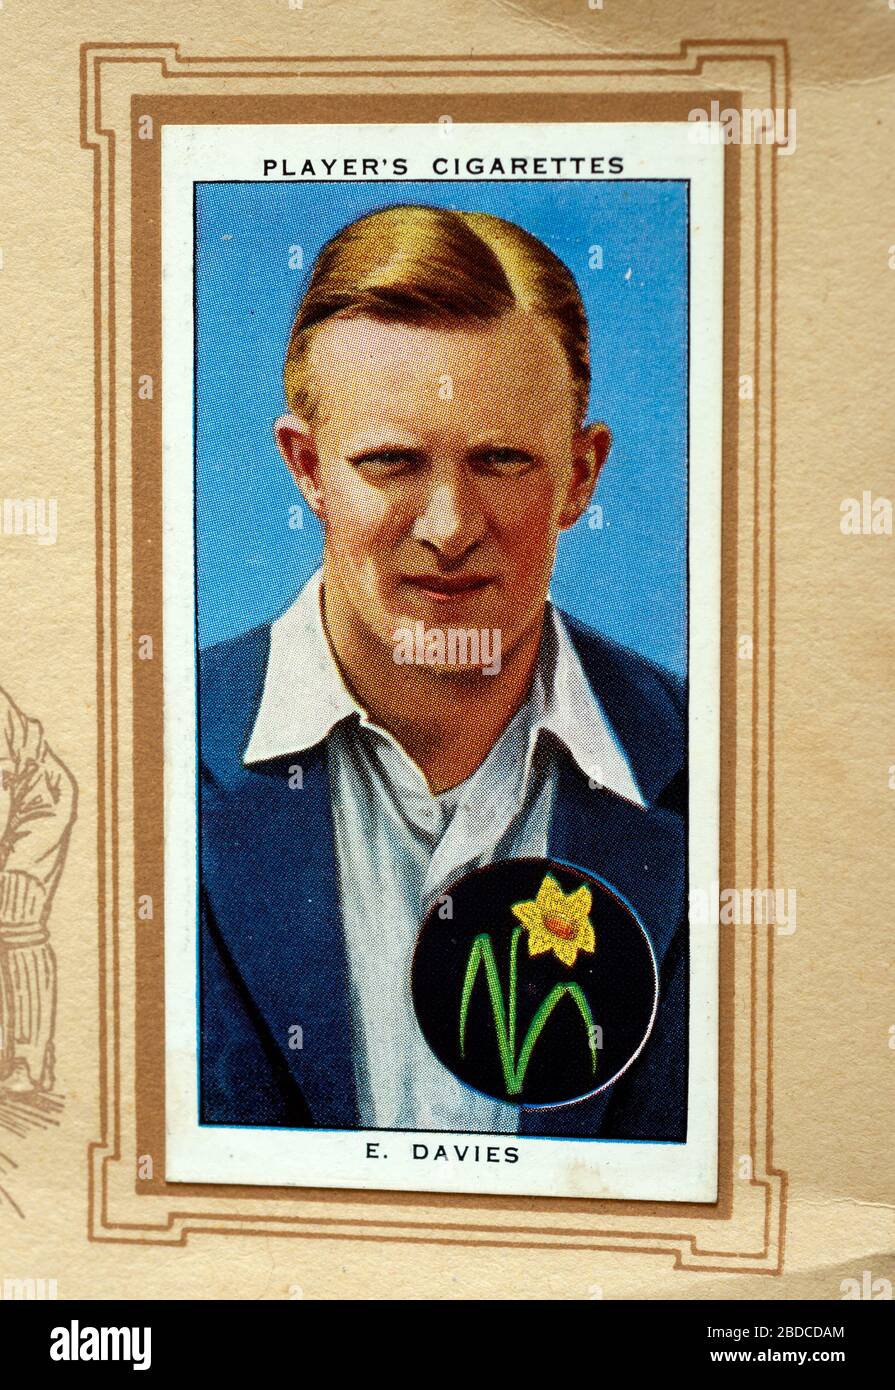 Voiture de cigarette d'un joueur, Cricketers 1938, Emrys Davies Banque D'Images